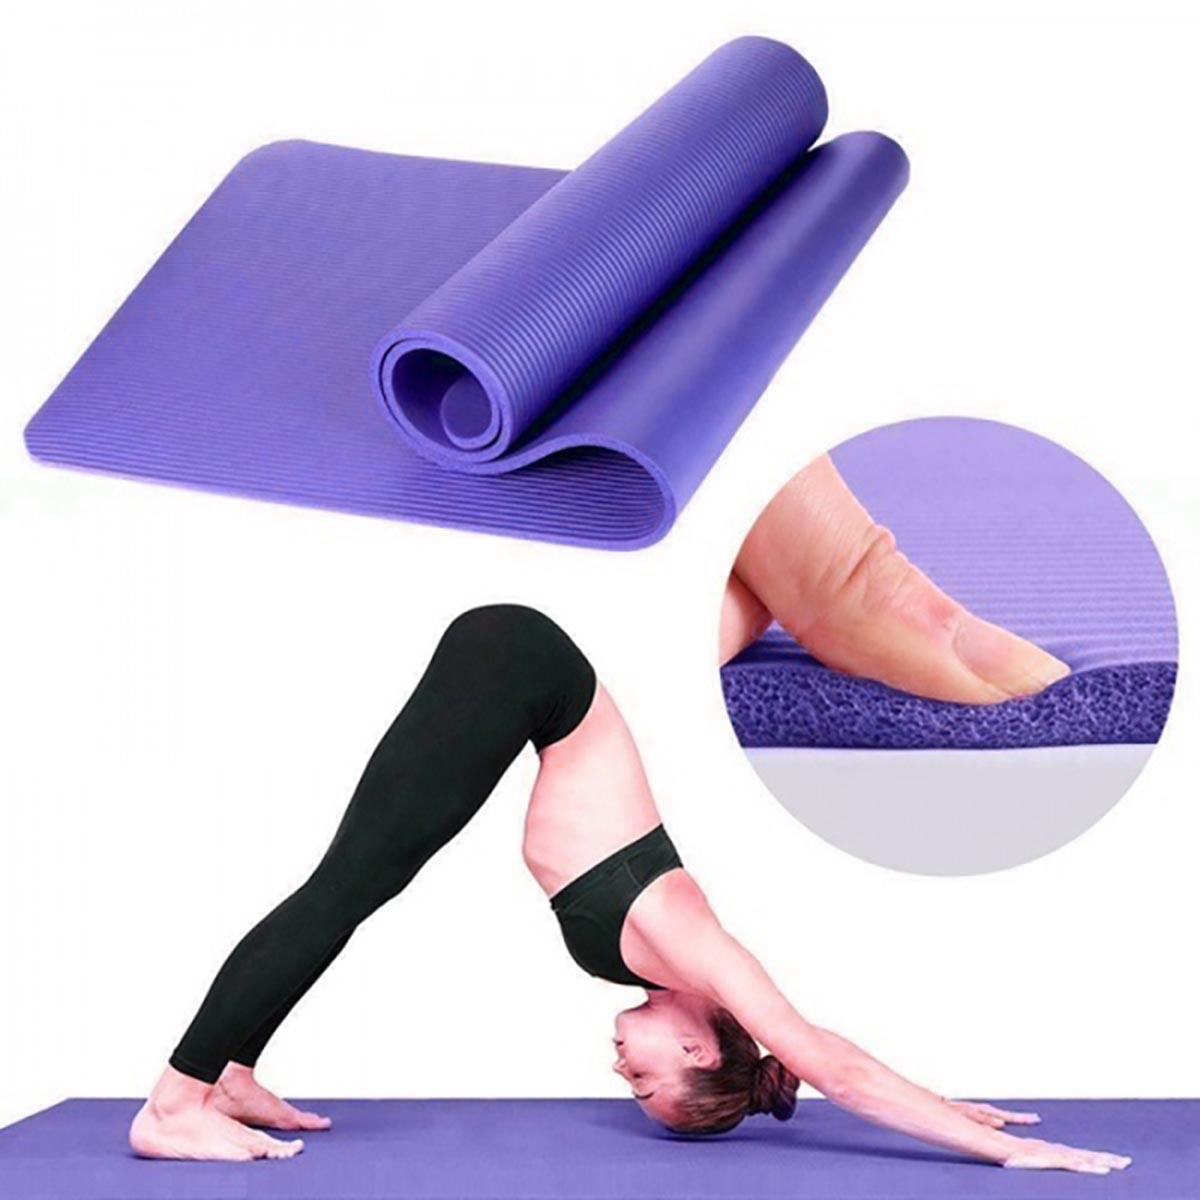 Yoga-Mats-Anti-Slip-Exercise-Fitness-Meditation-Pilate-Pads-Exerciser-Home-Gym-1715227-6